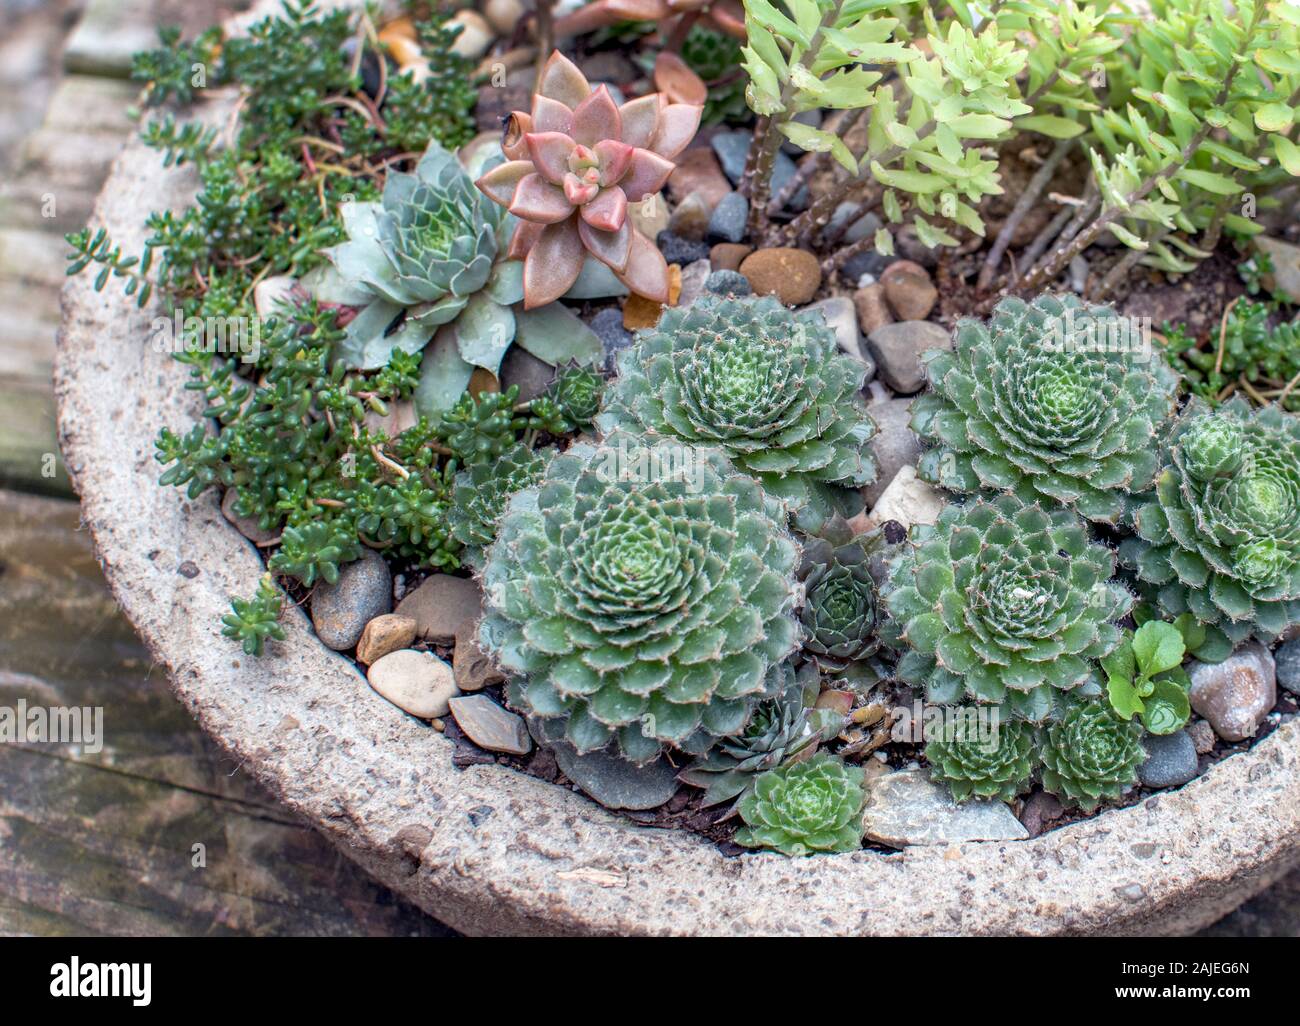 Dekorative Stein Schüssel hält einen kleinen Sukkulenten Garten von Kakteen  und andere kleine Pflanzen Stockfotografie - Alamy